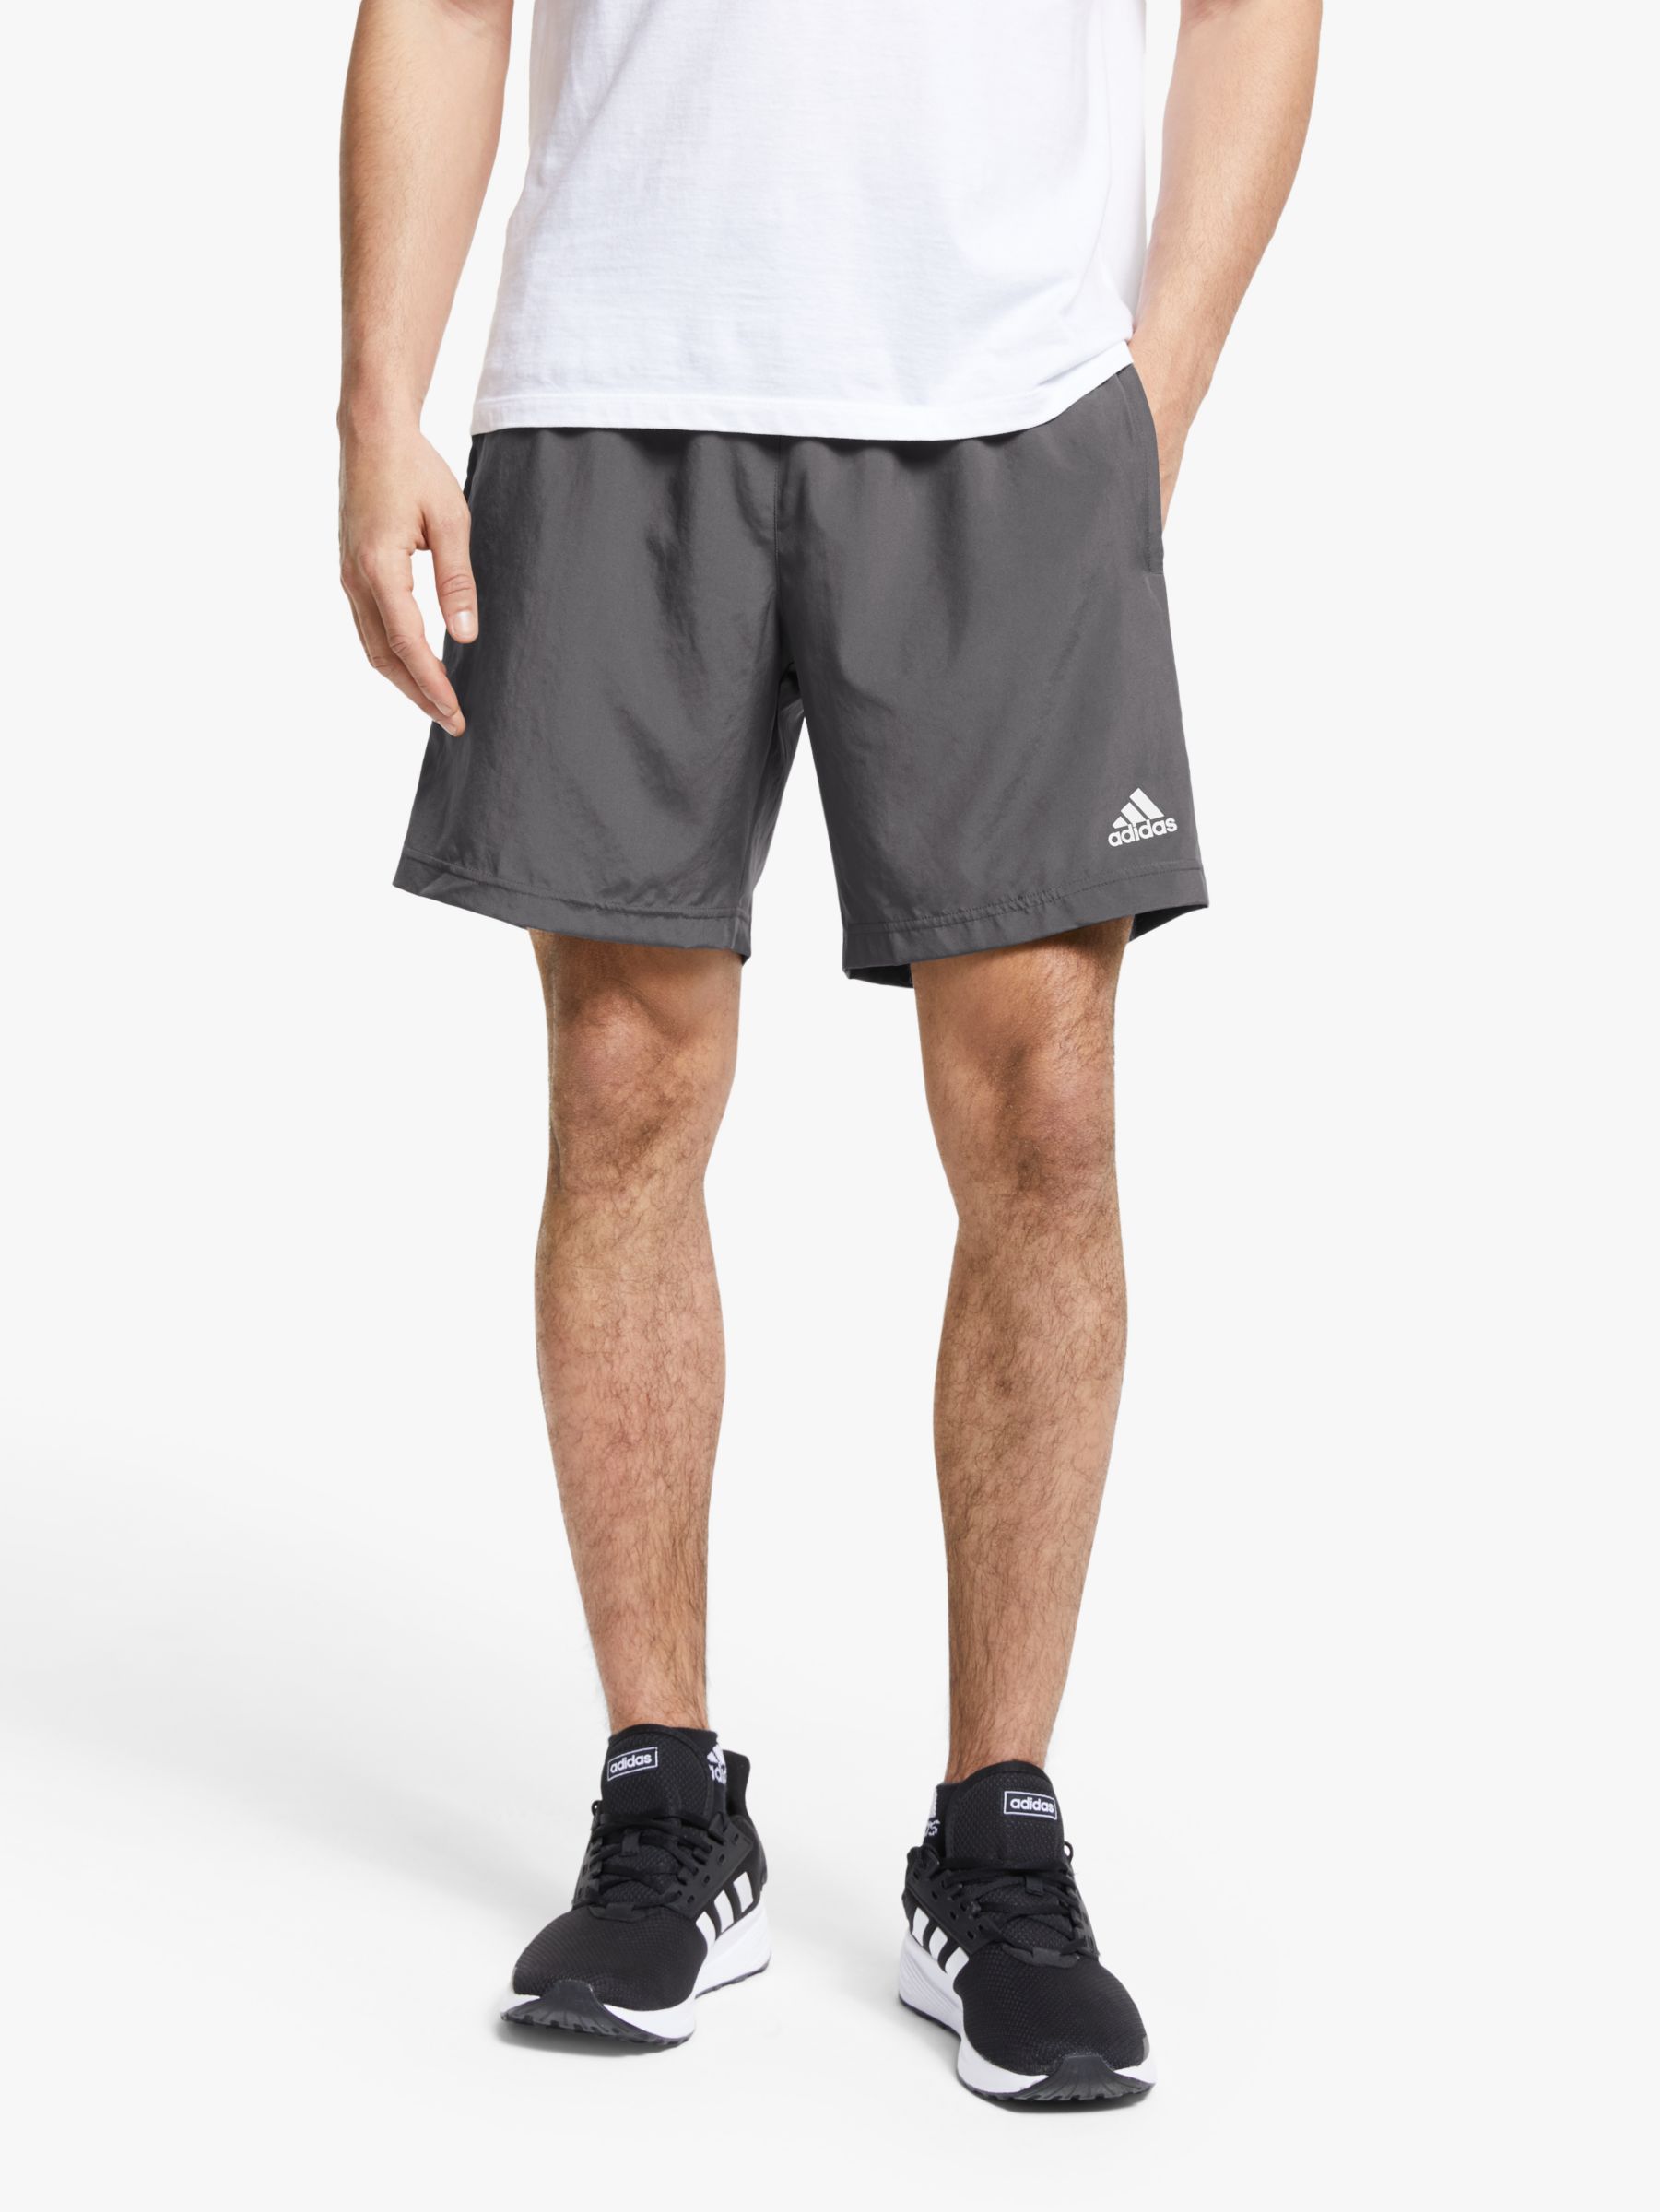 adidas pb shorts